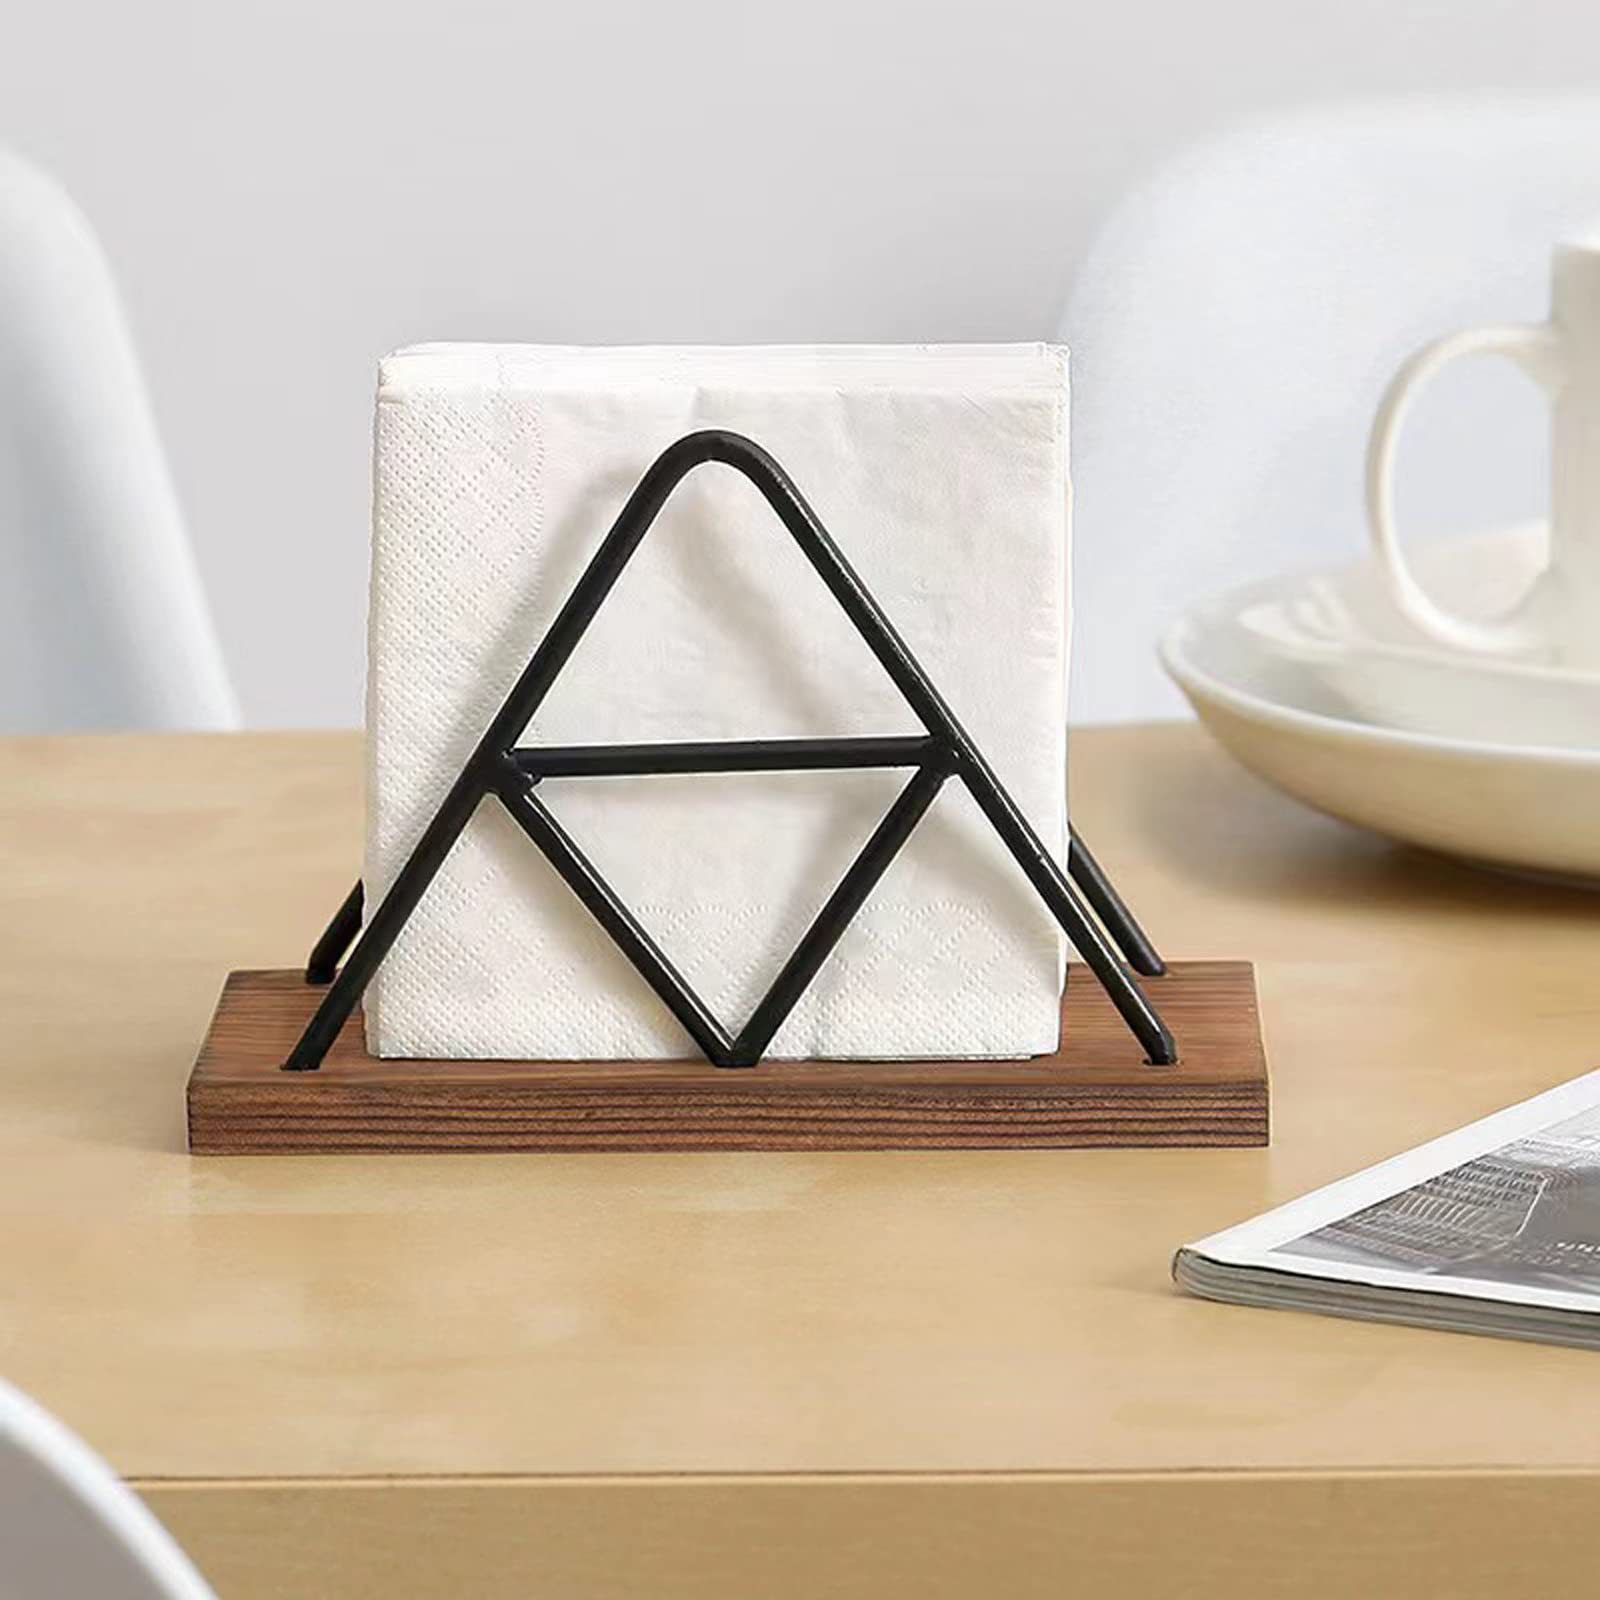 铁木结合三角餐巾收纳架木质三角卫生纸收纳架创意款餐巾架